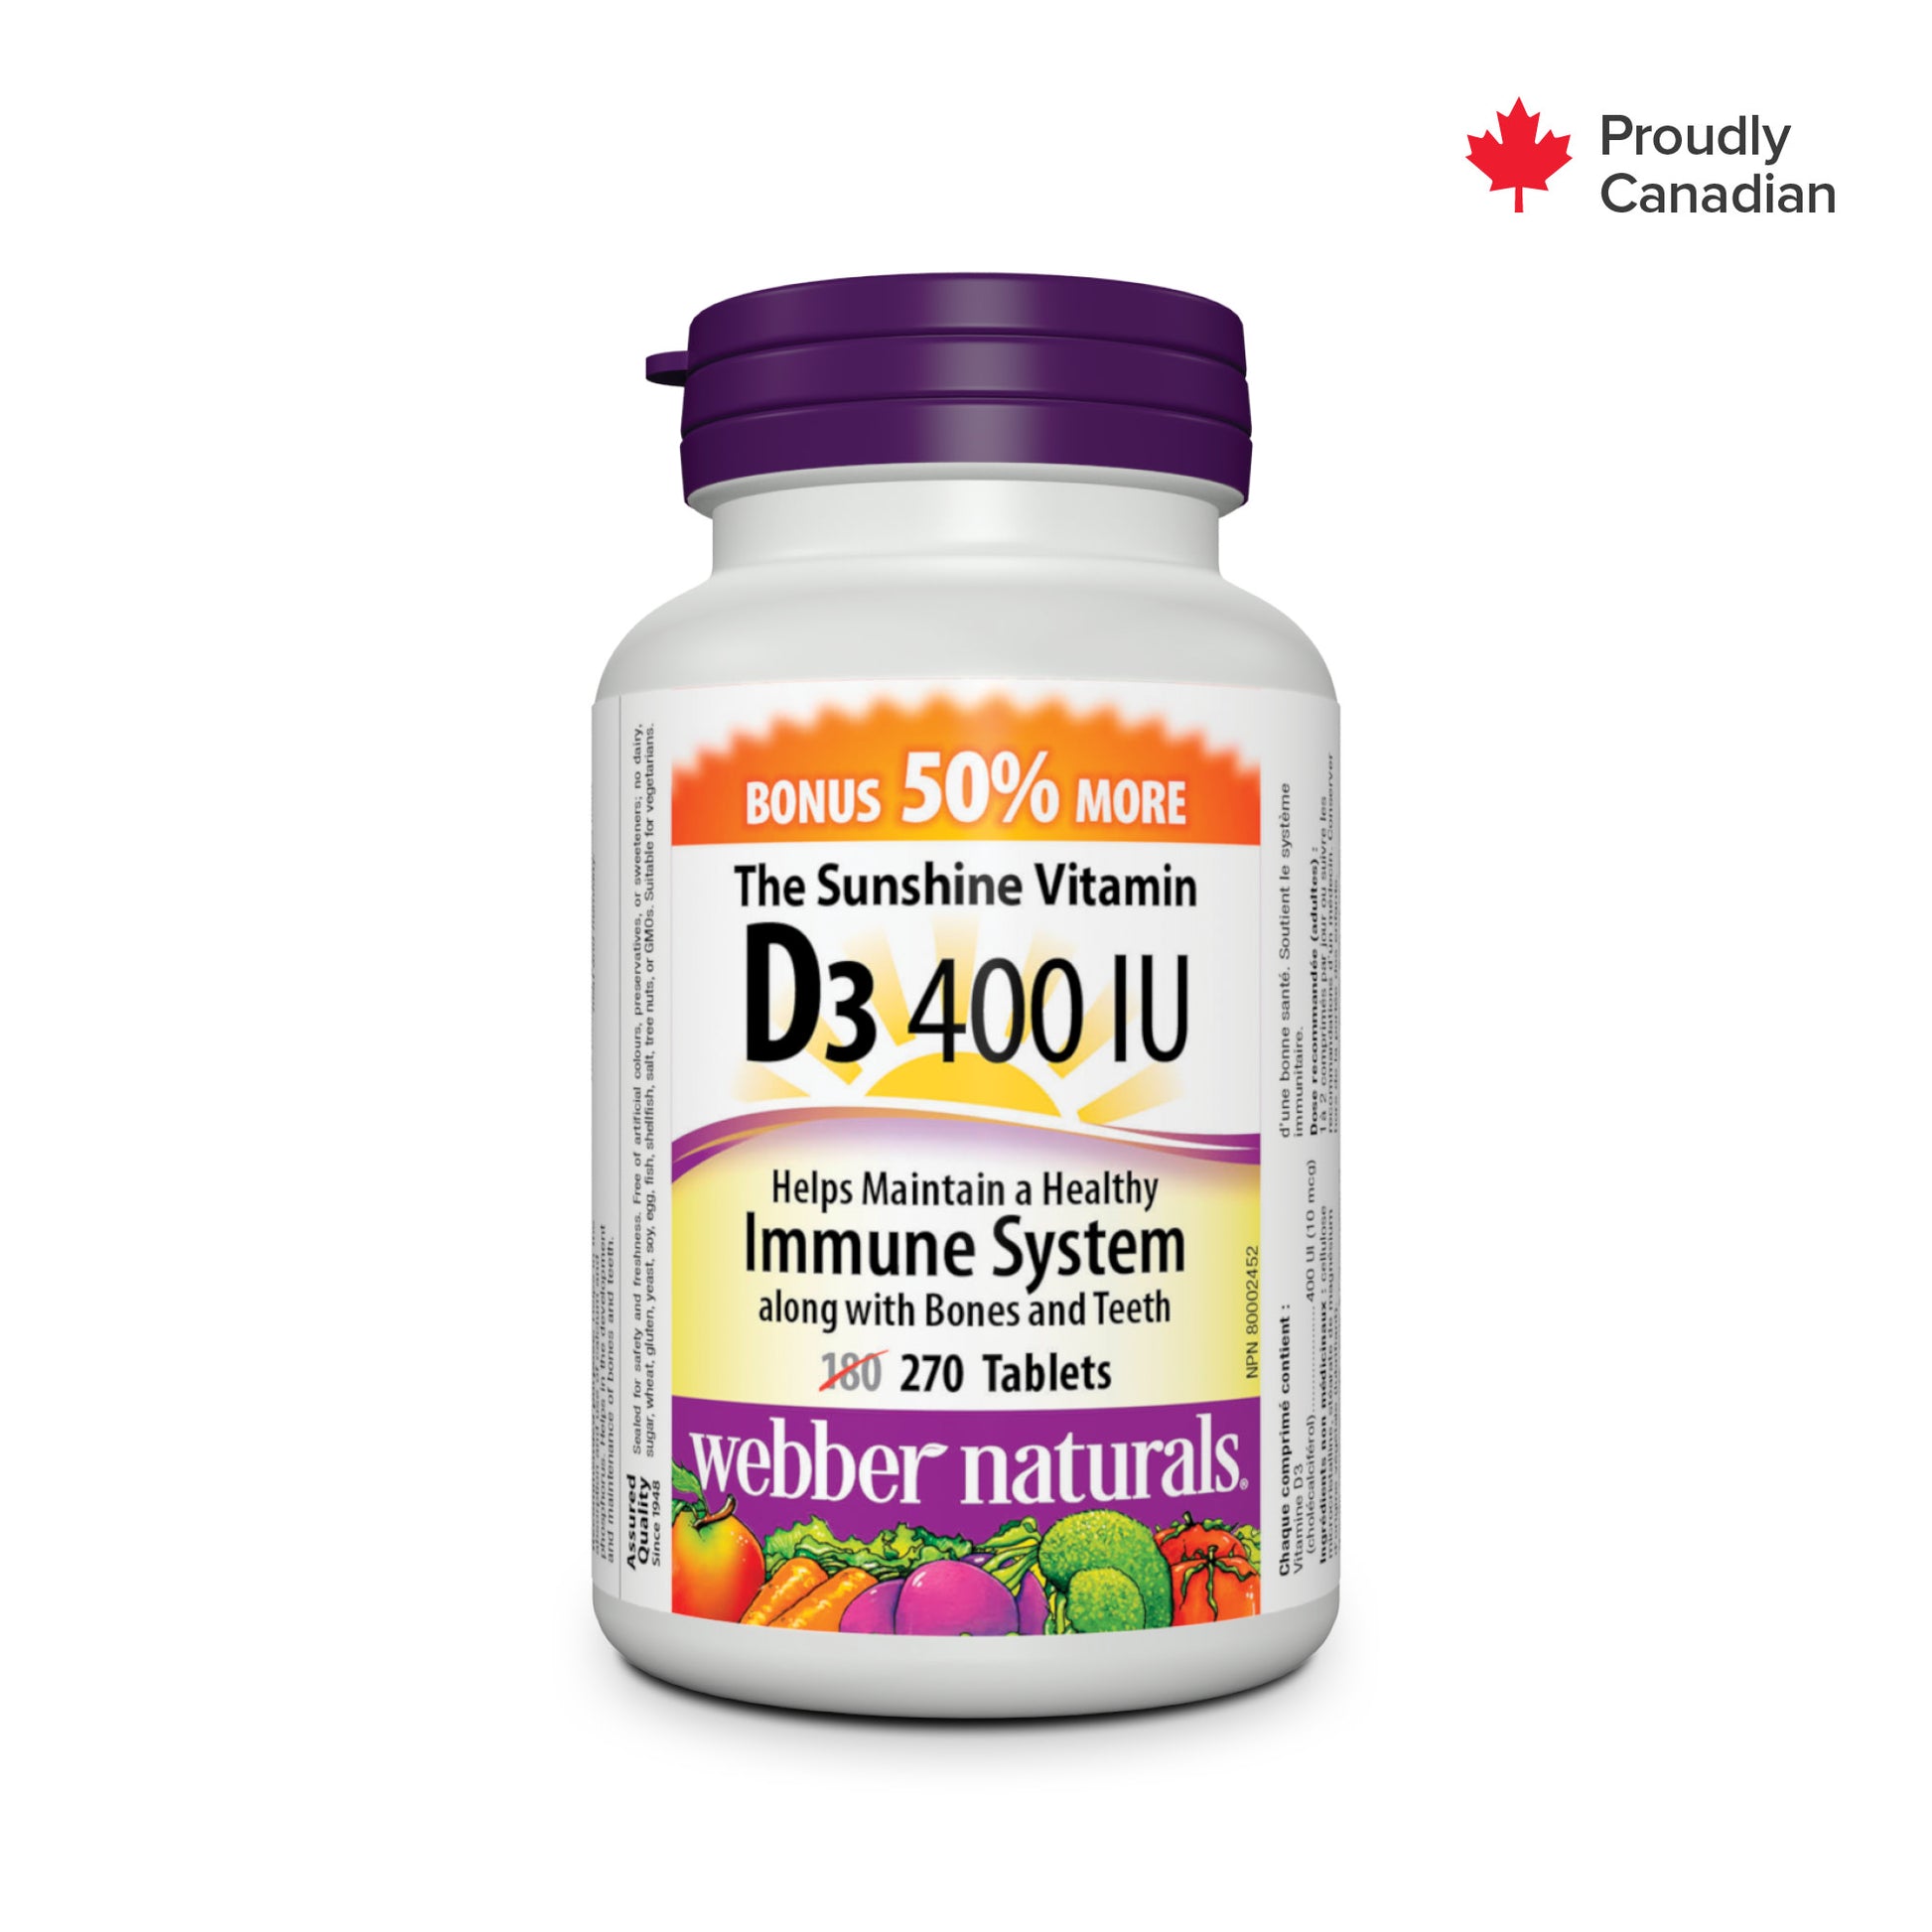 Vitamine D3 400 UI for Webber Naturals|v|hi-res|WN3805